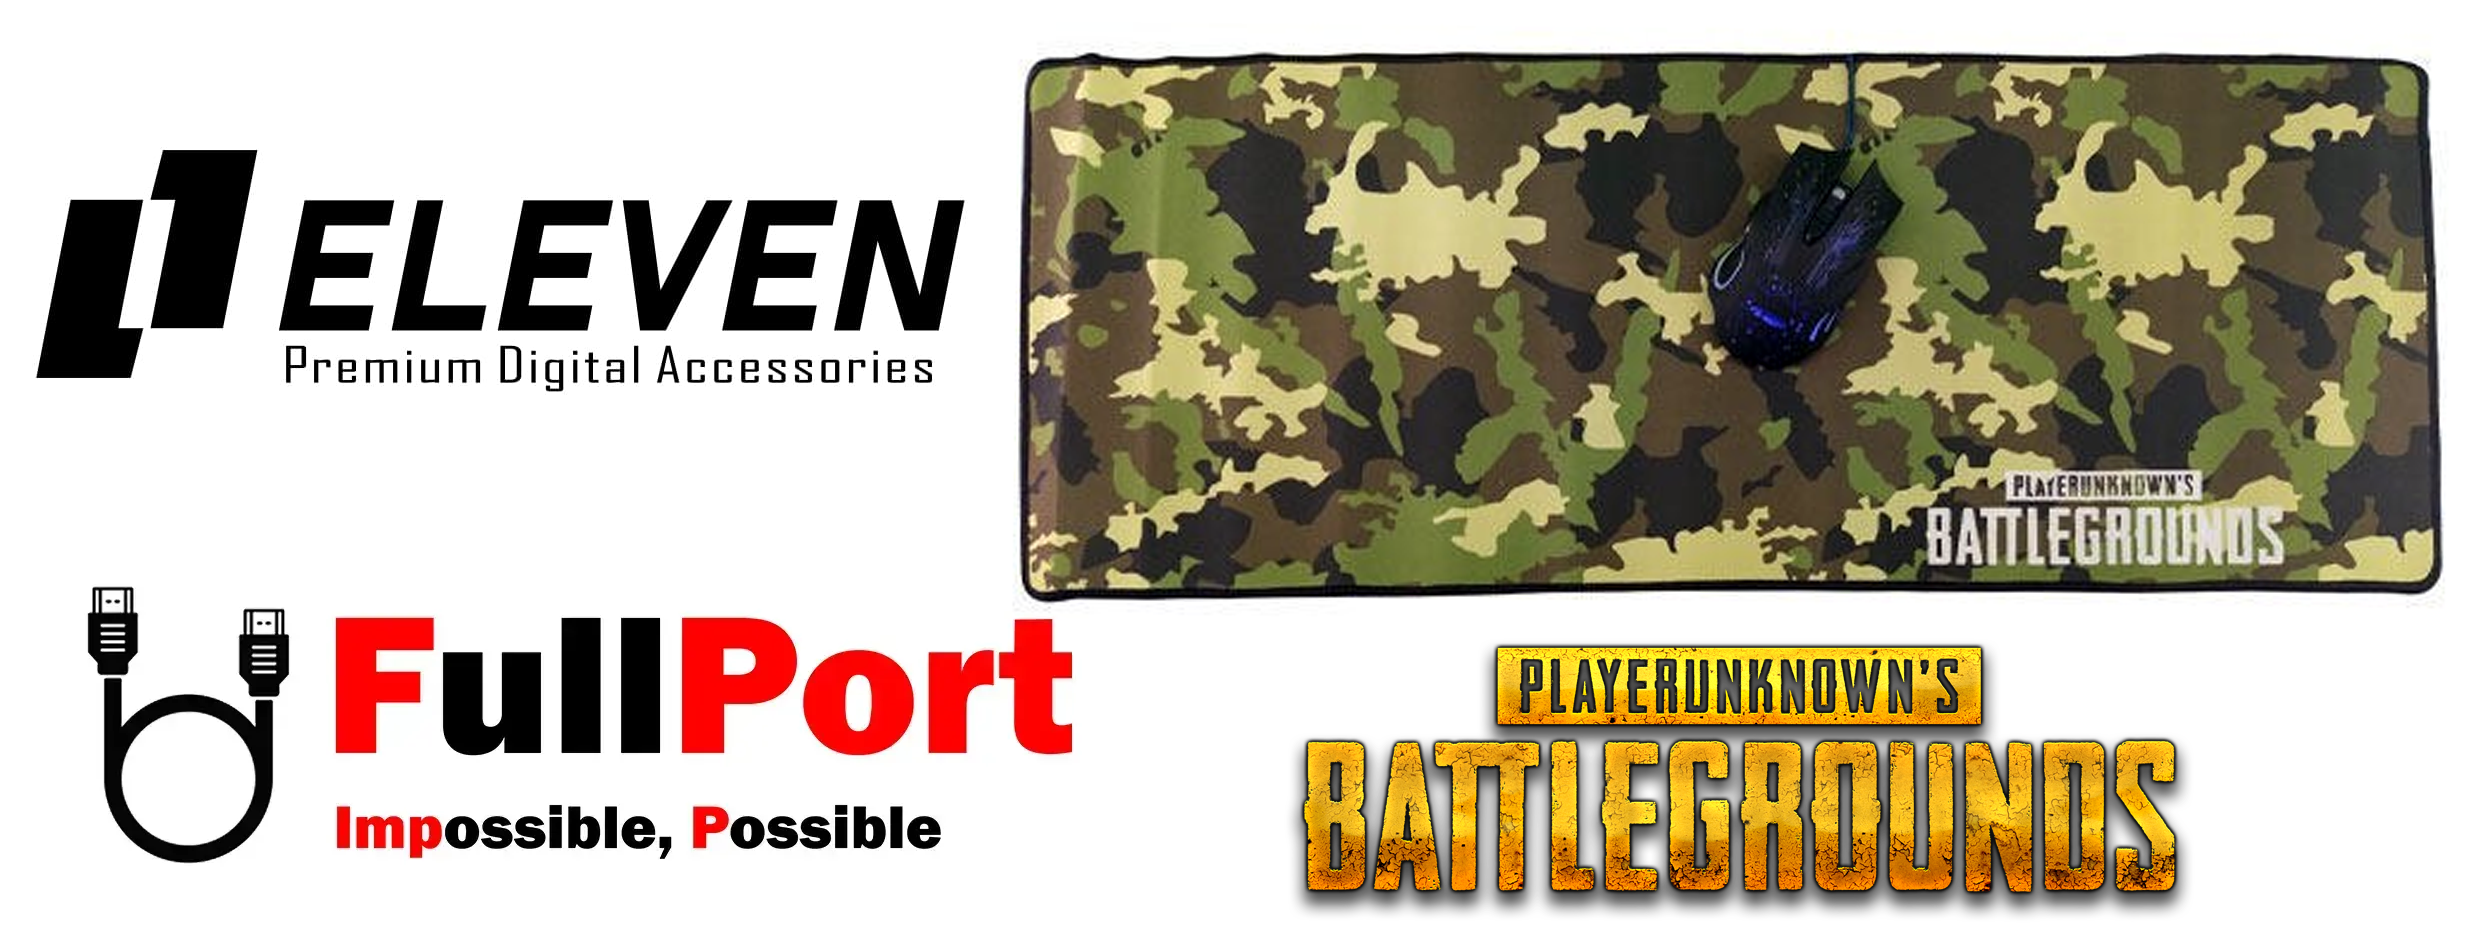 خرید اینترنتی پدموس مخصوص بازی | Gameing ایلون | ELEVEN مدل GMP3070 طرح Battlegrounds ARMY از فروشگاه اینترنتی فول پورت